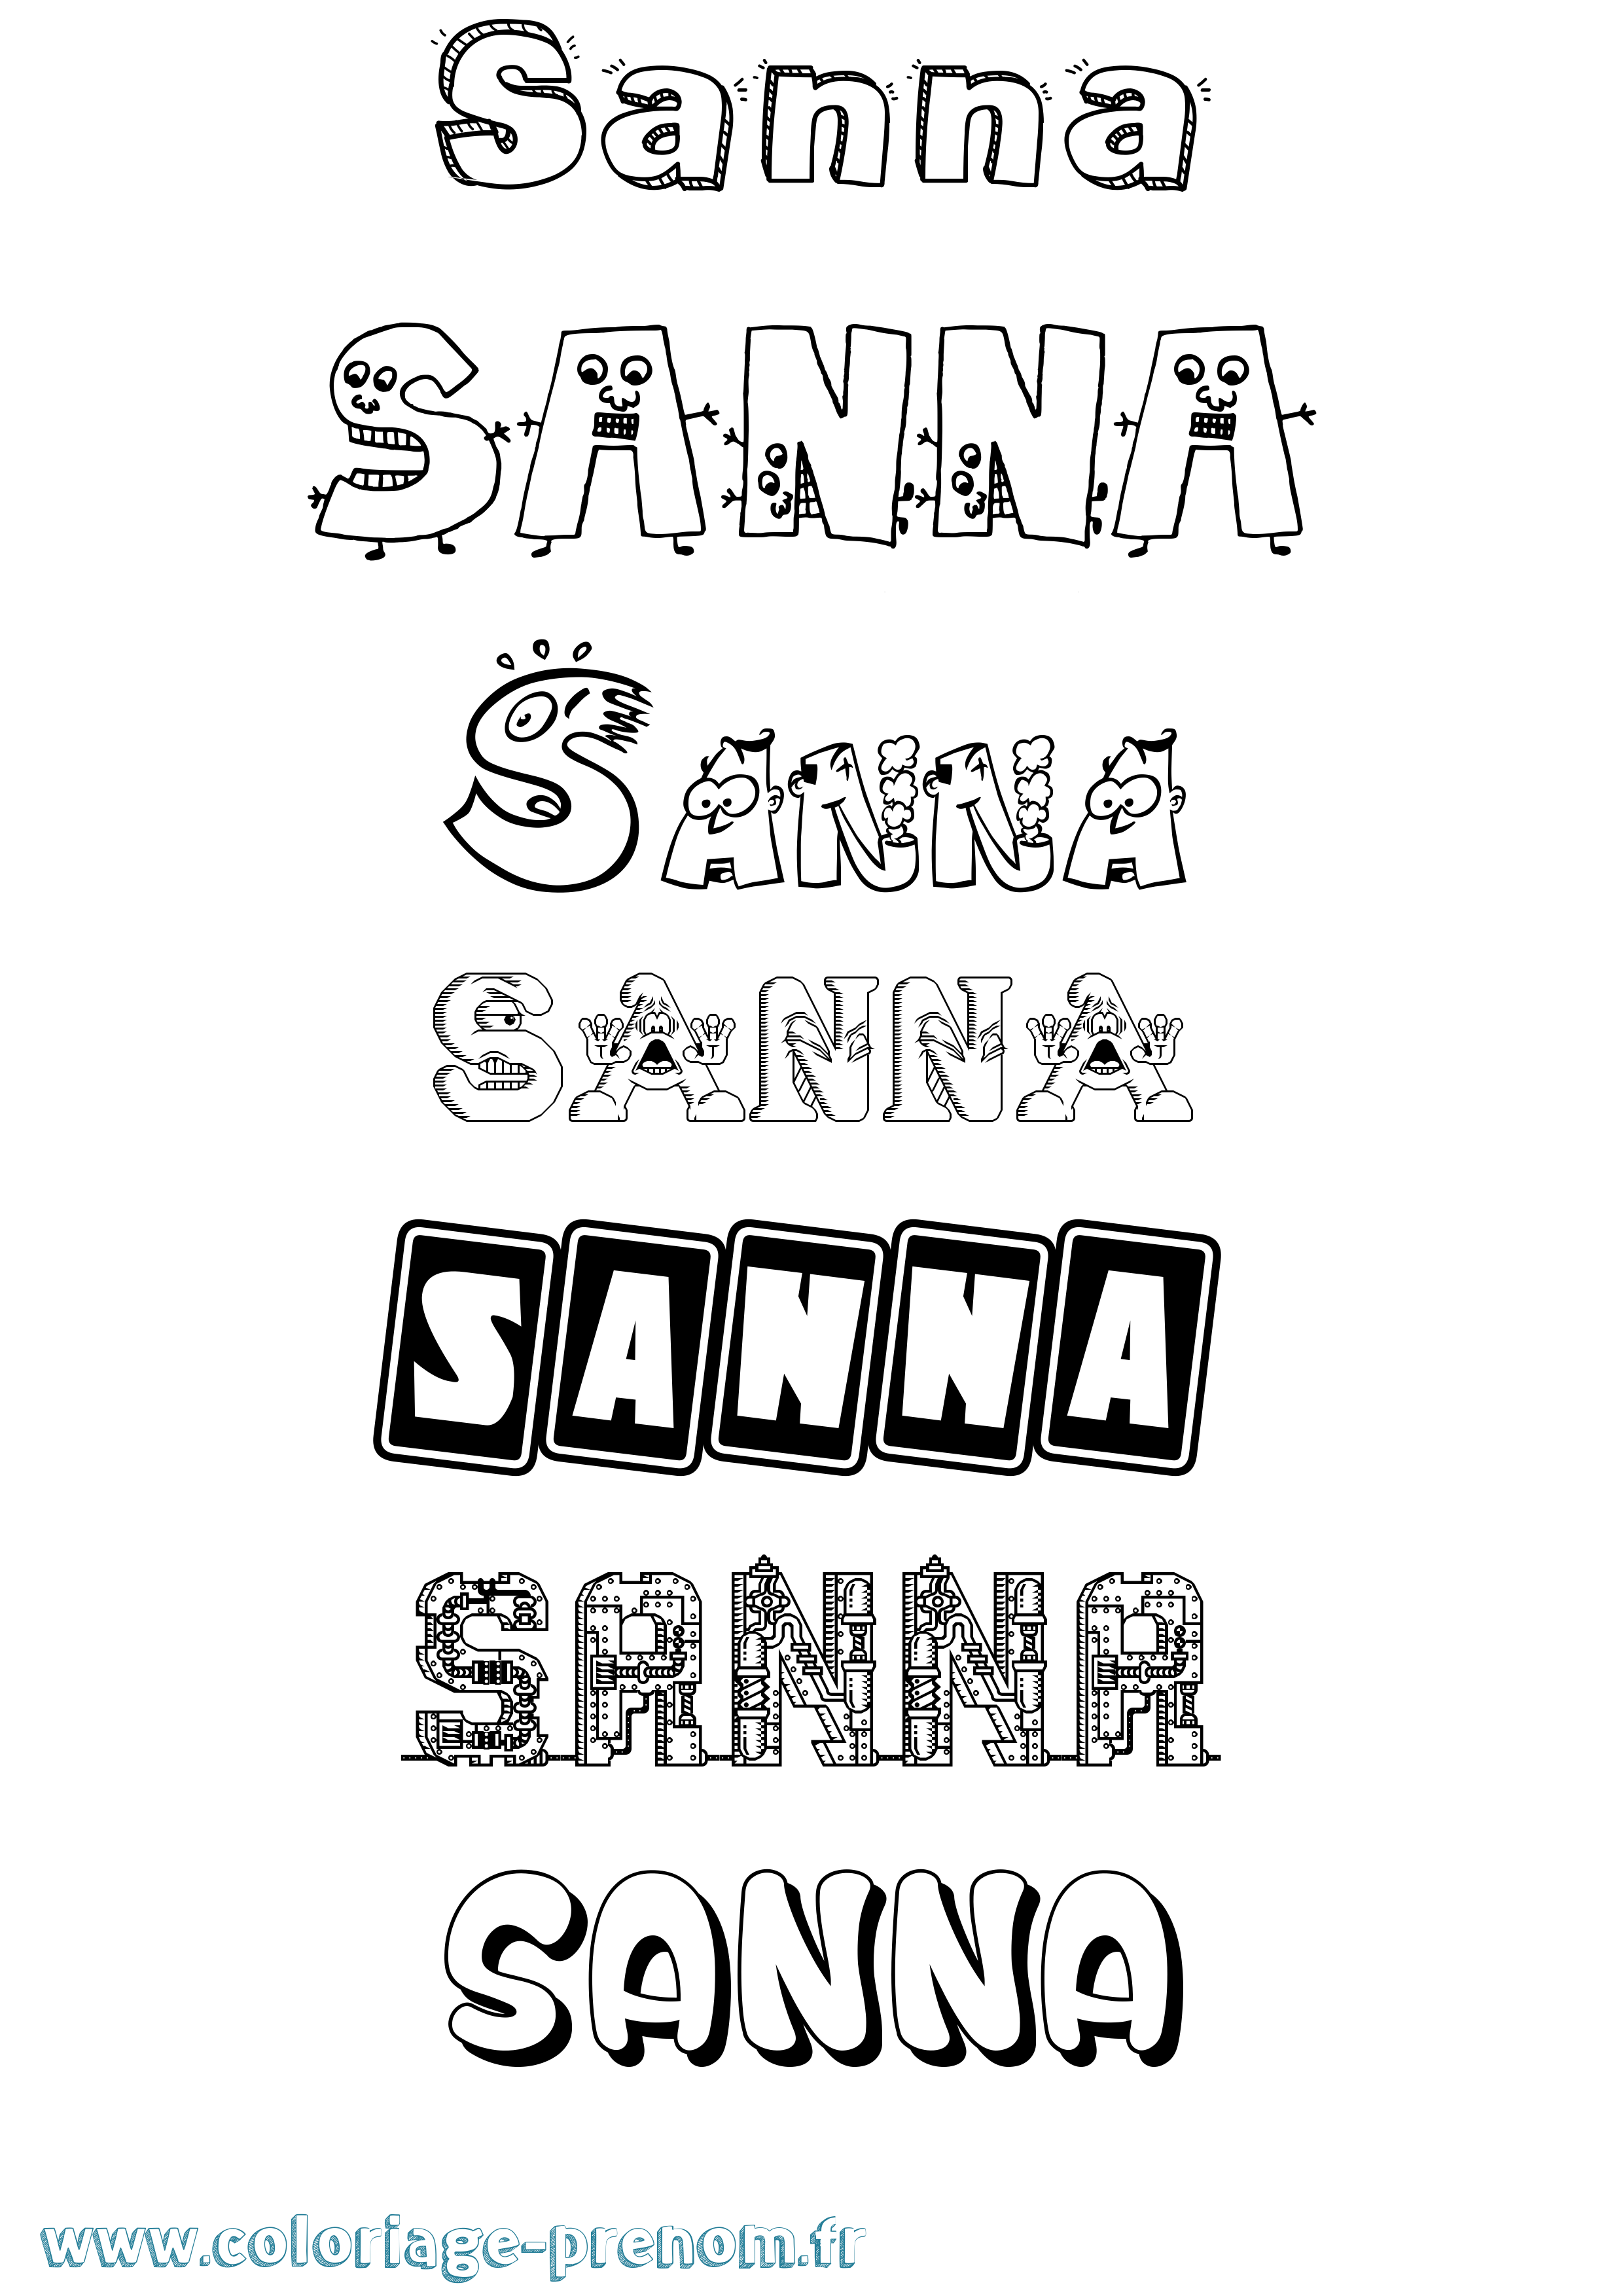 Coloriage prénom Sanna Fun